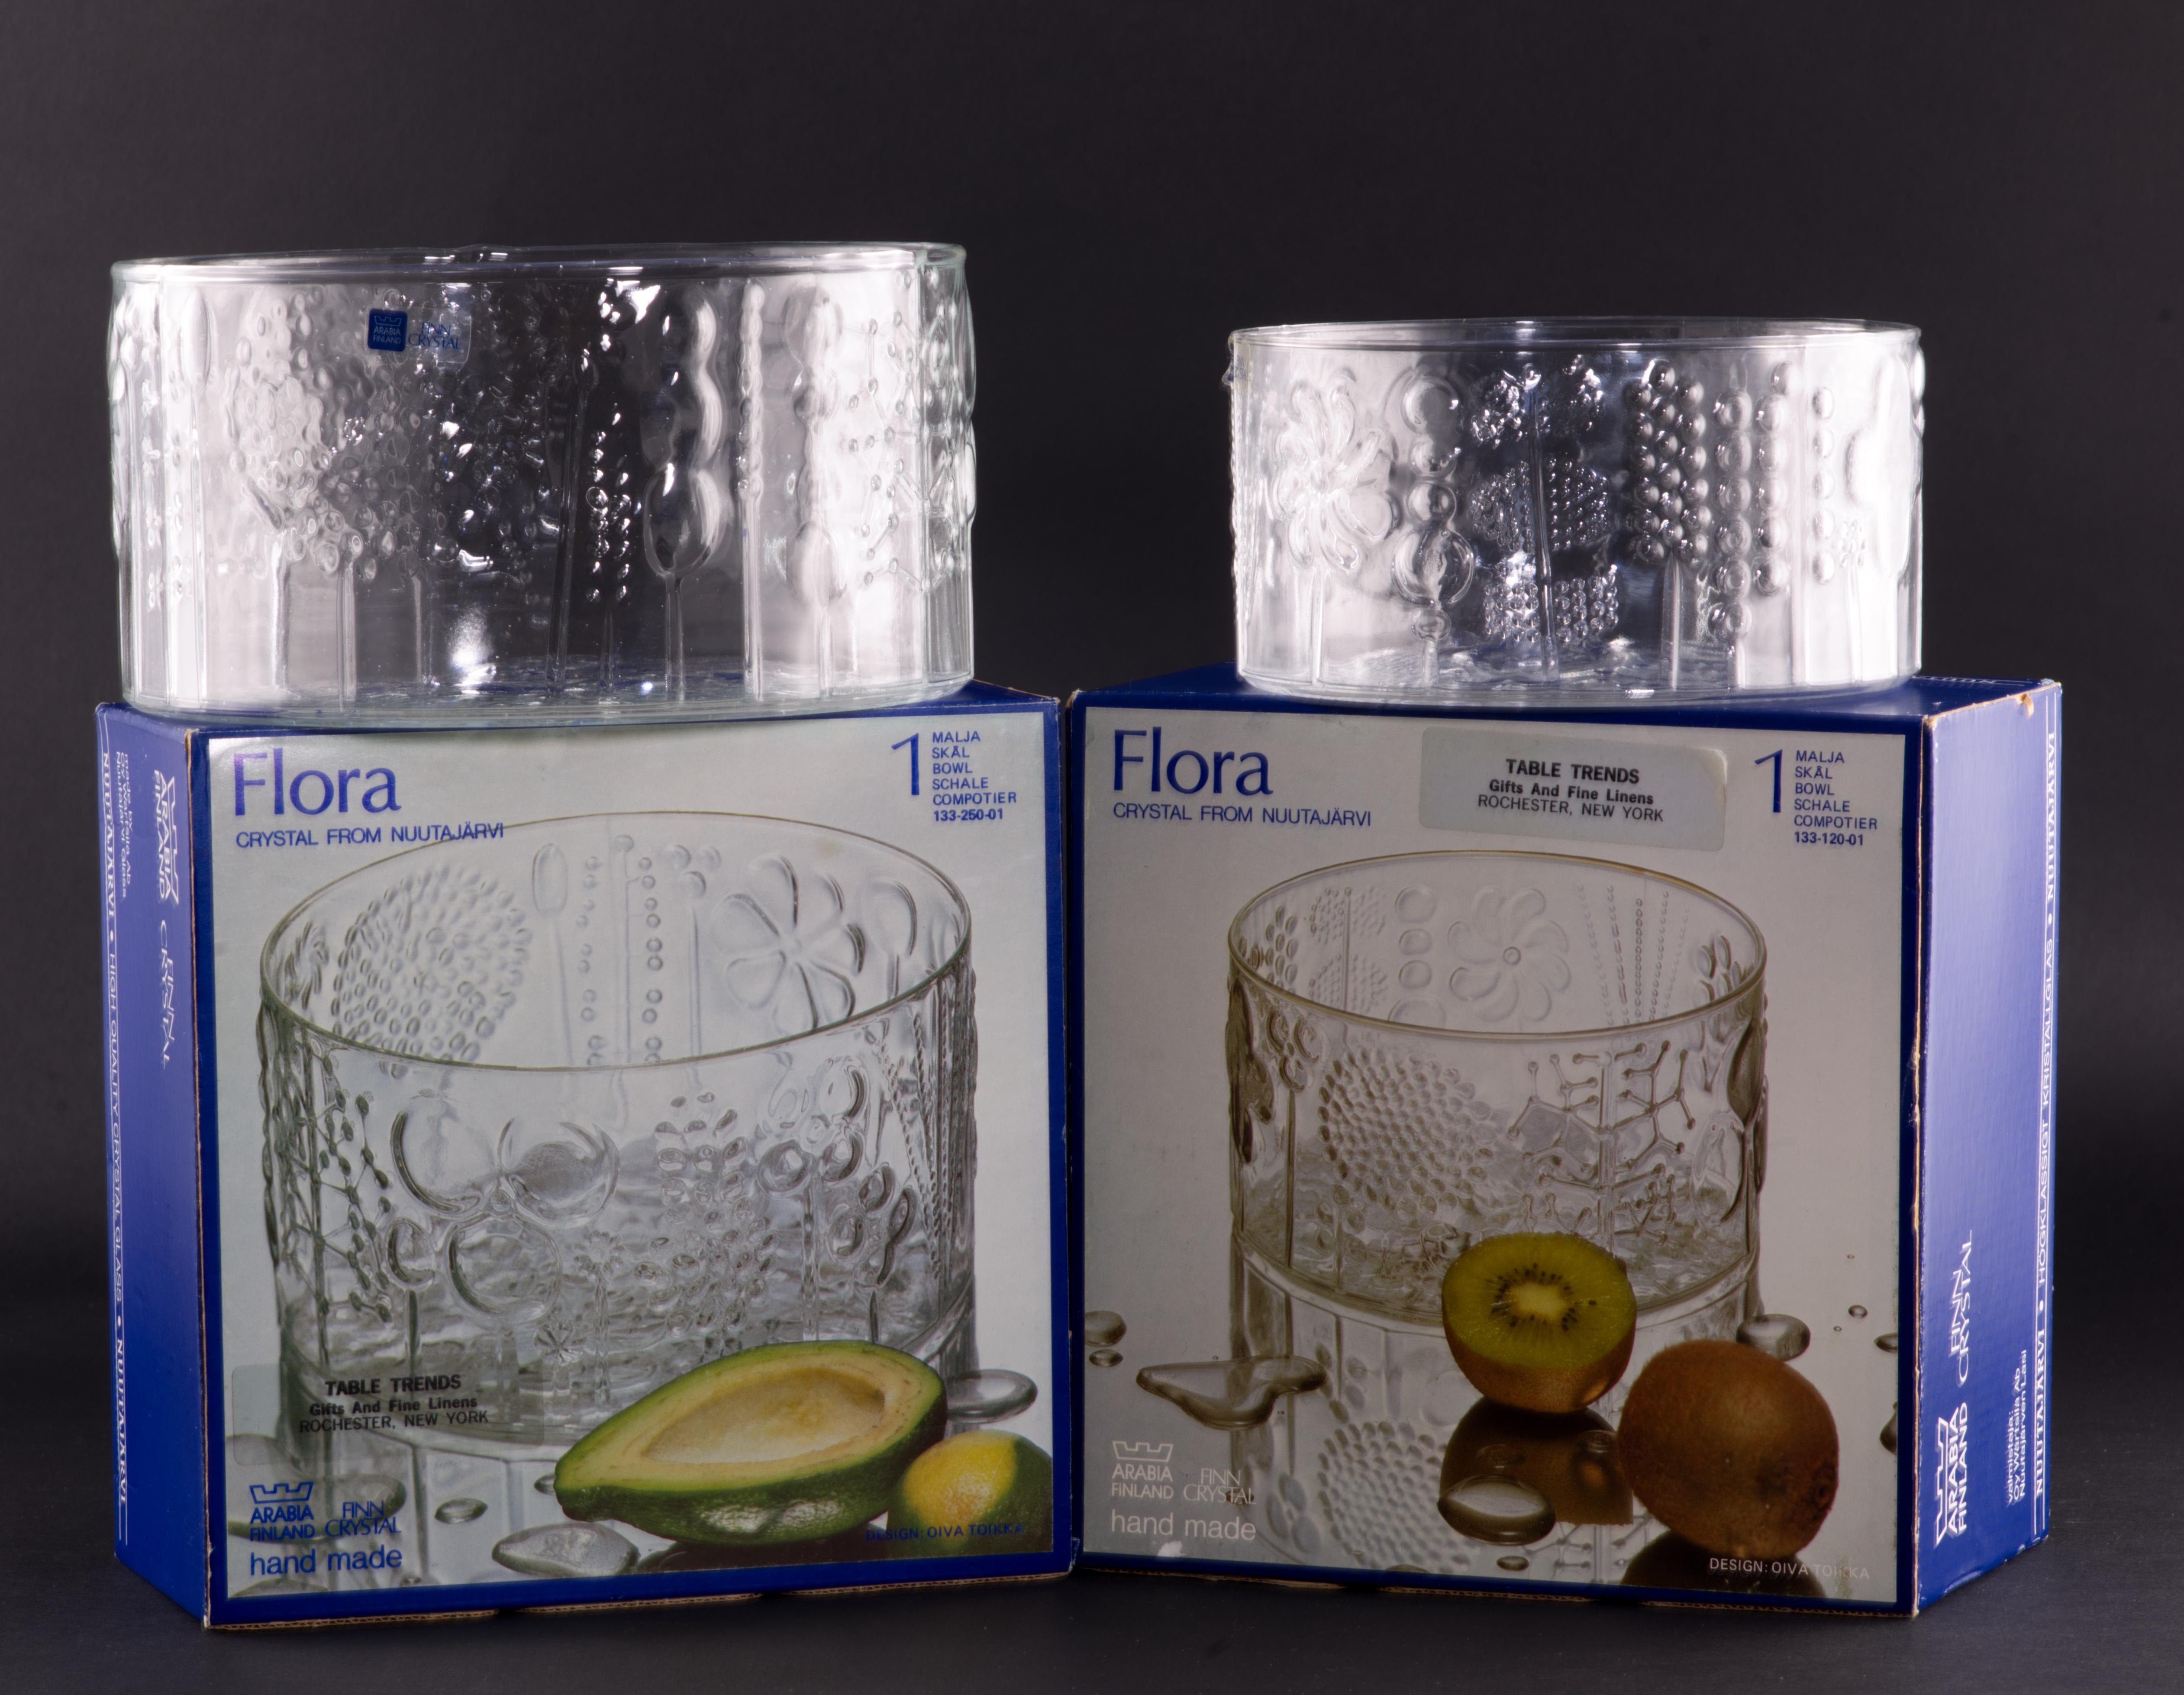 
Les bols Flora, conçus par Oiva Toikka pour Arabia Finland en 1966 et fabriqués par la verrerie Nuutajarvi, en Finlande, sont un bel exemple du design en verre scandinave moderne du milieu du siècle dernier. La série Flora se compose de verre